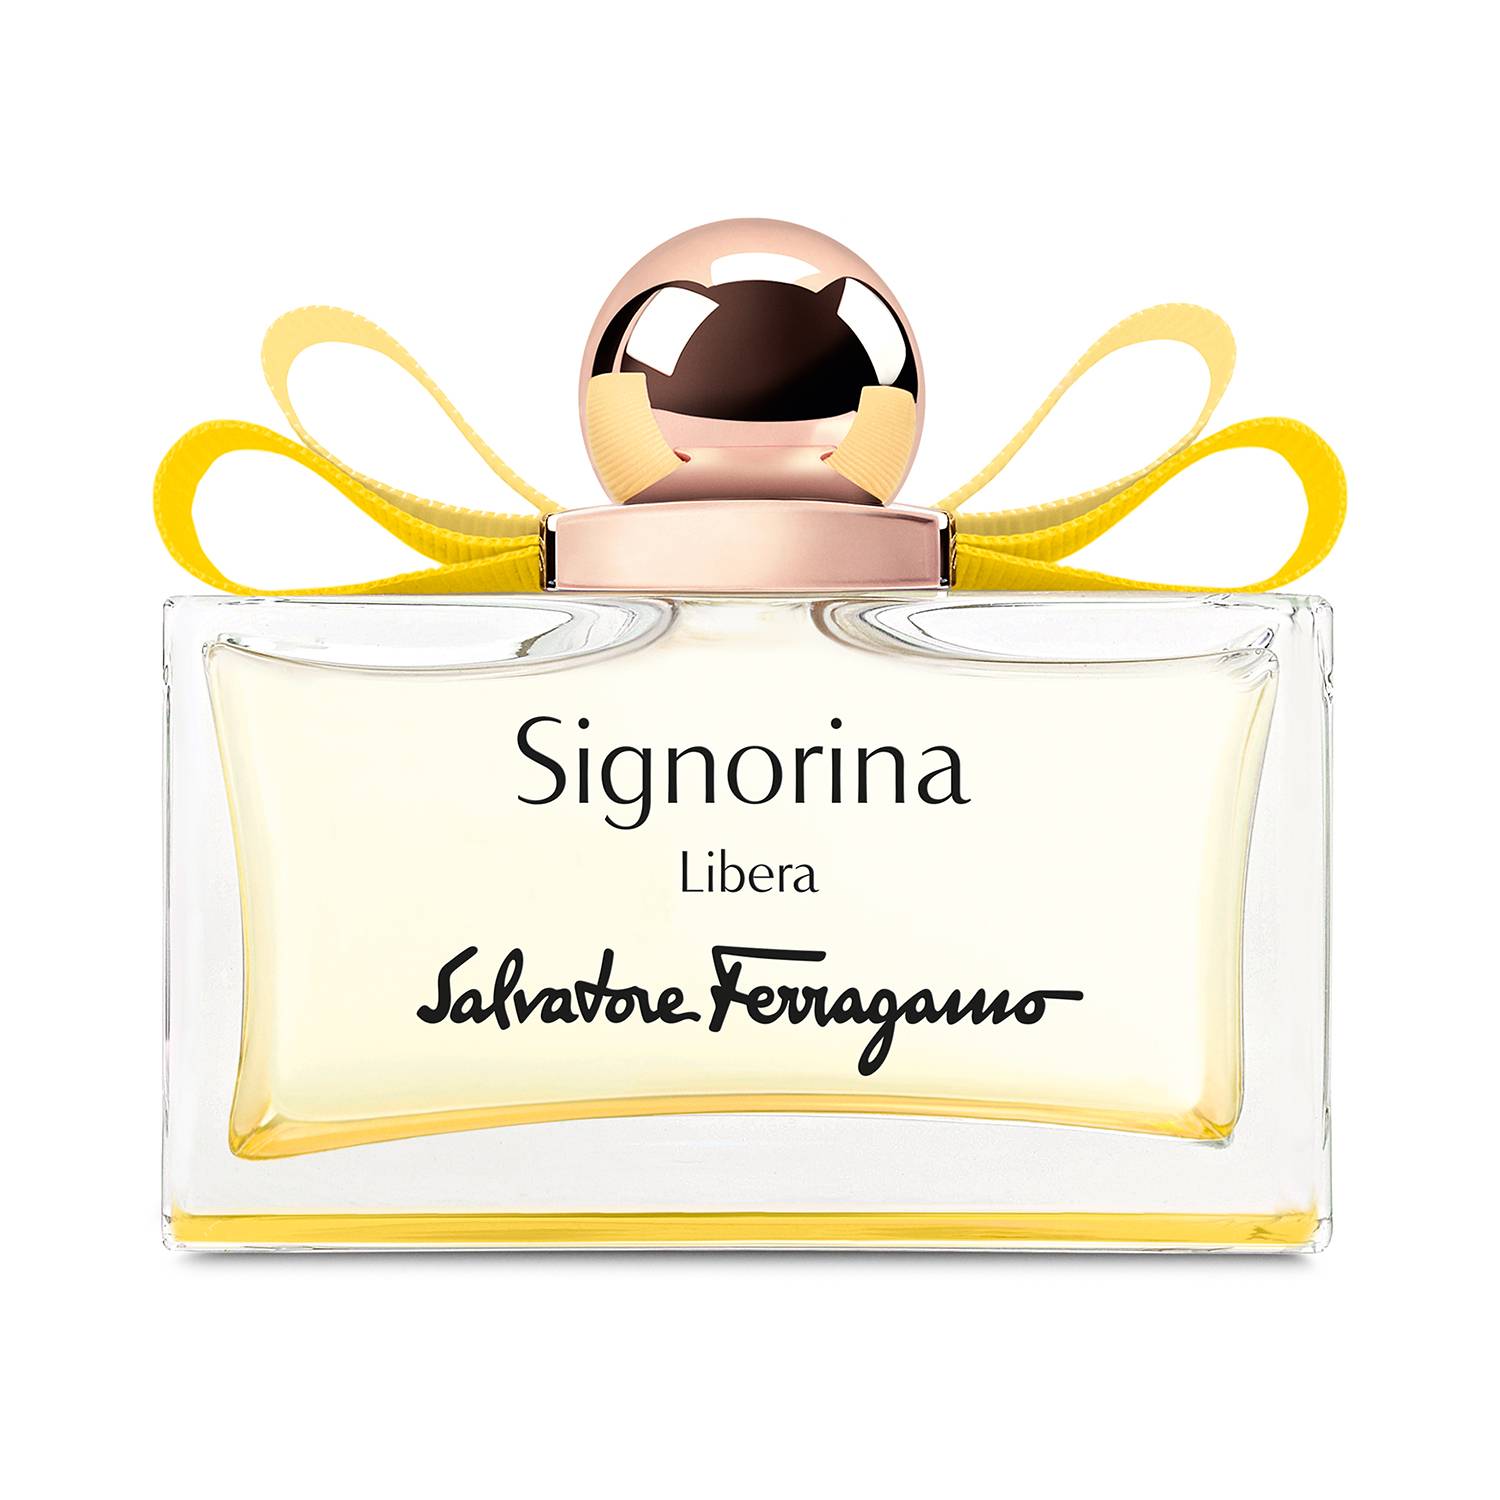 Salvatore Ferragamo Signorina Libera Eau de Parfum 100ml (3.4 fl oz)